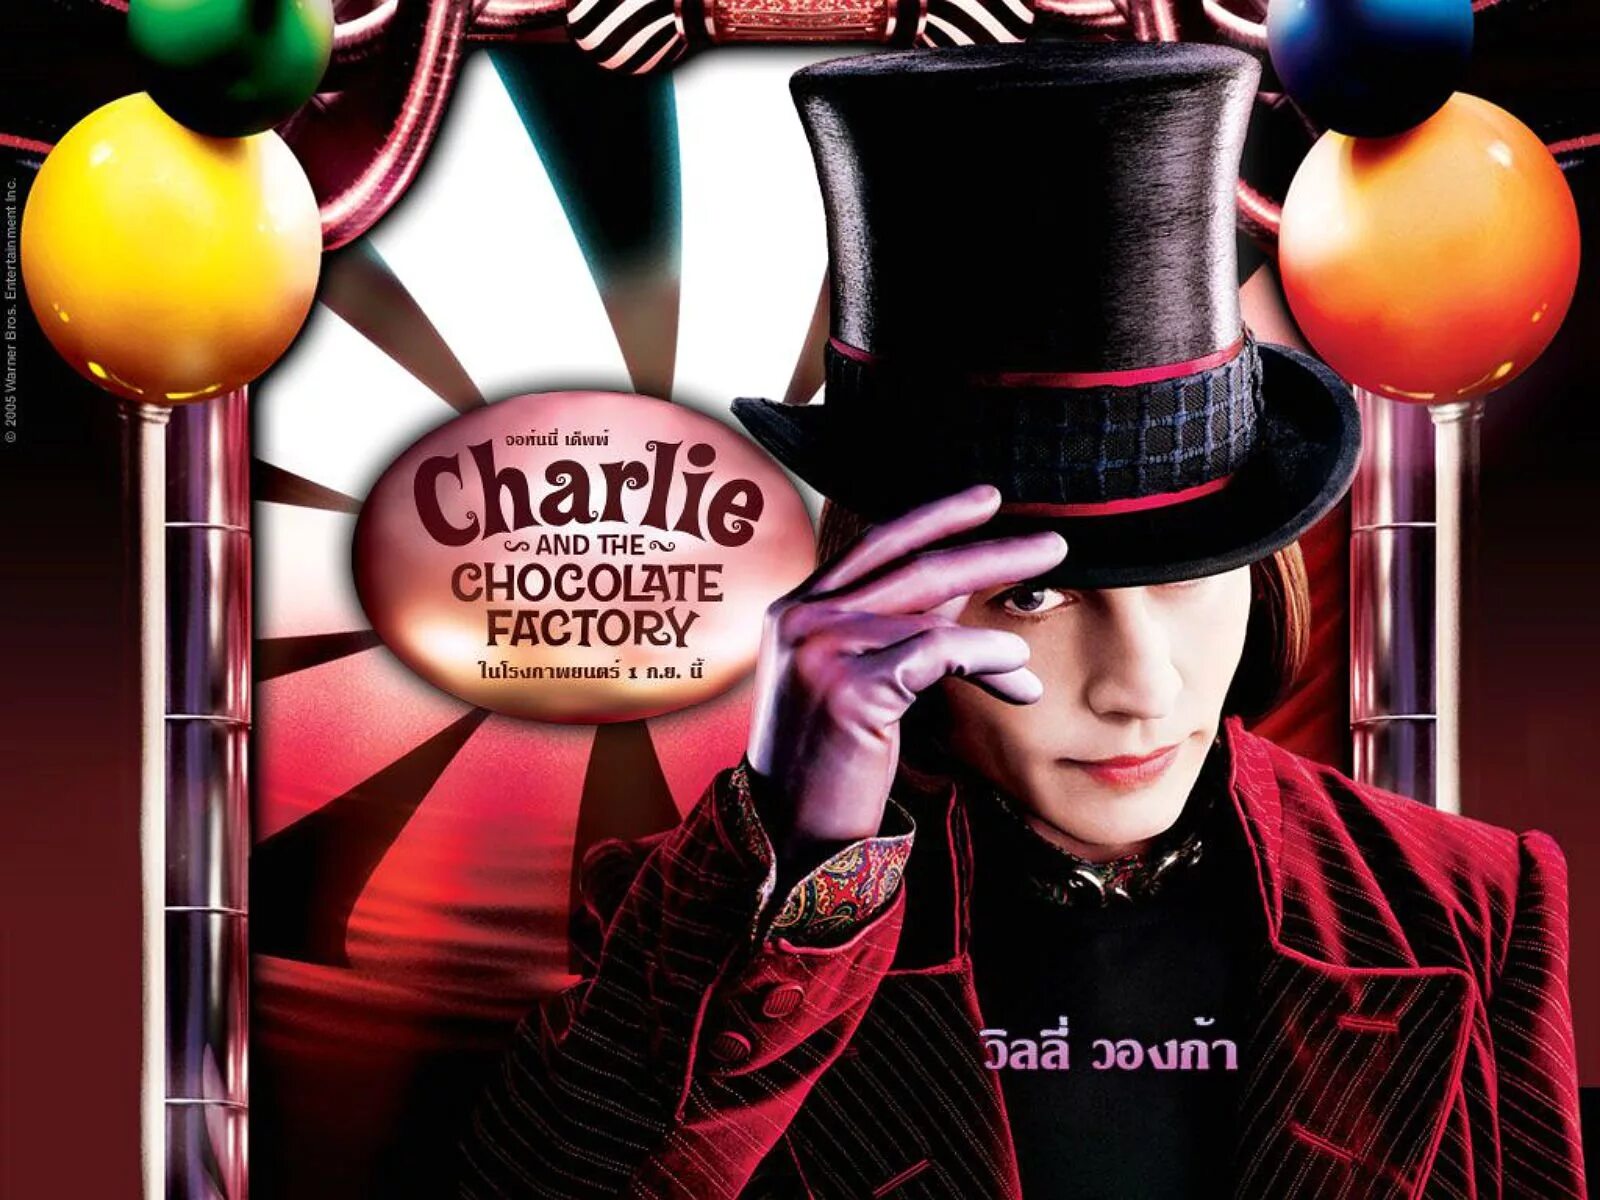 Шоколадная фабрика 3. Джонни Депп Чарли и шоколадная фабрика. Чарли и шоколадная фабрика / Charlie and the Chocolate Factory (2005).